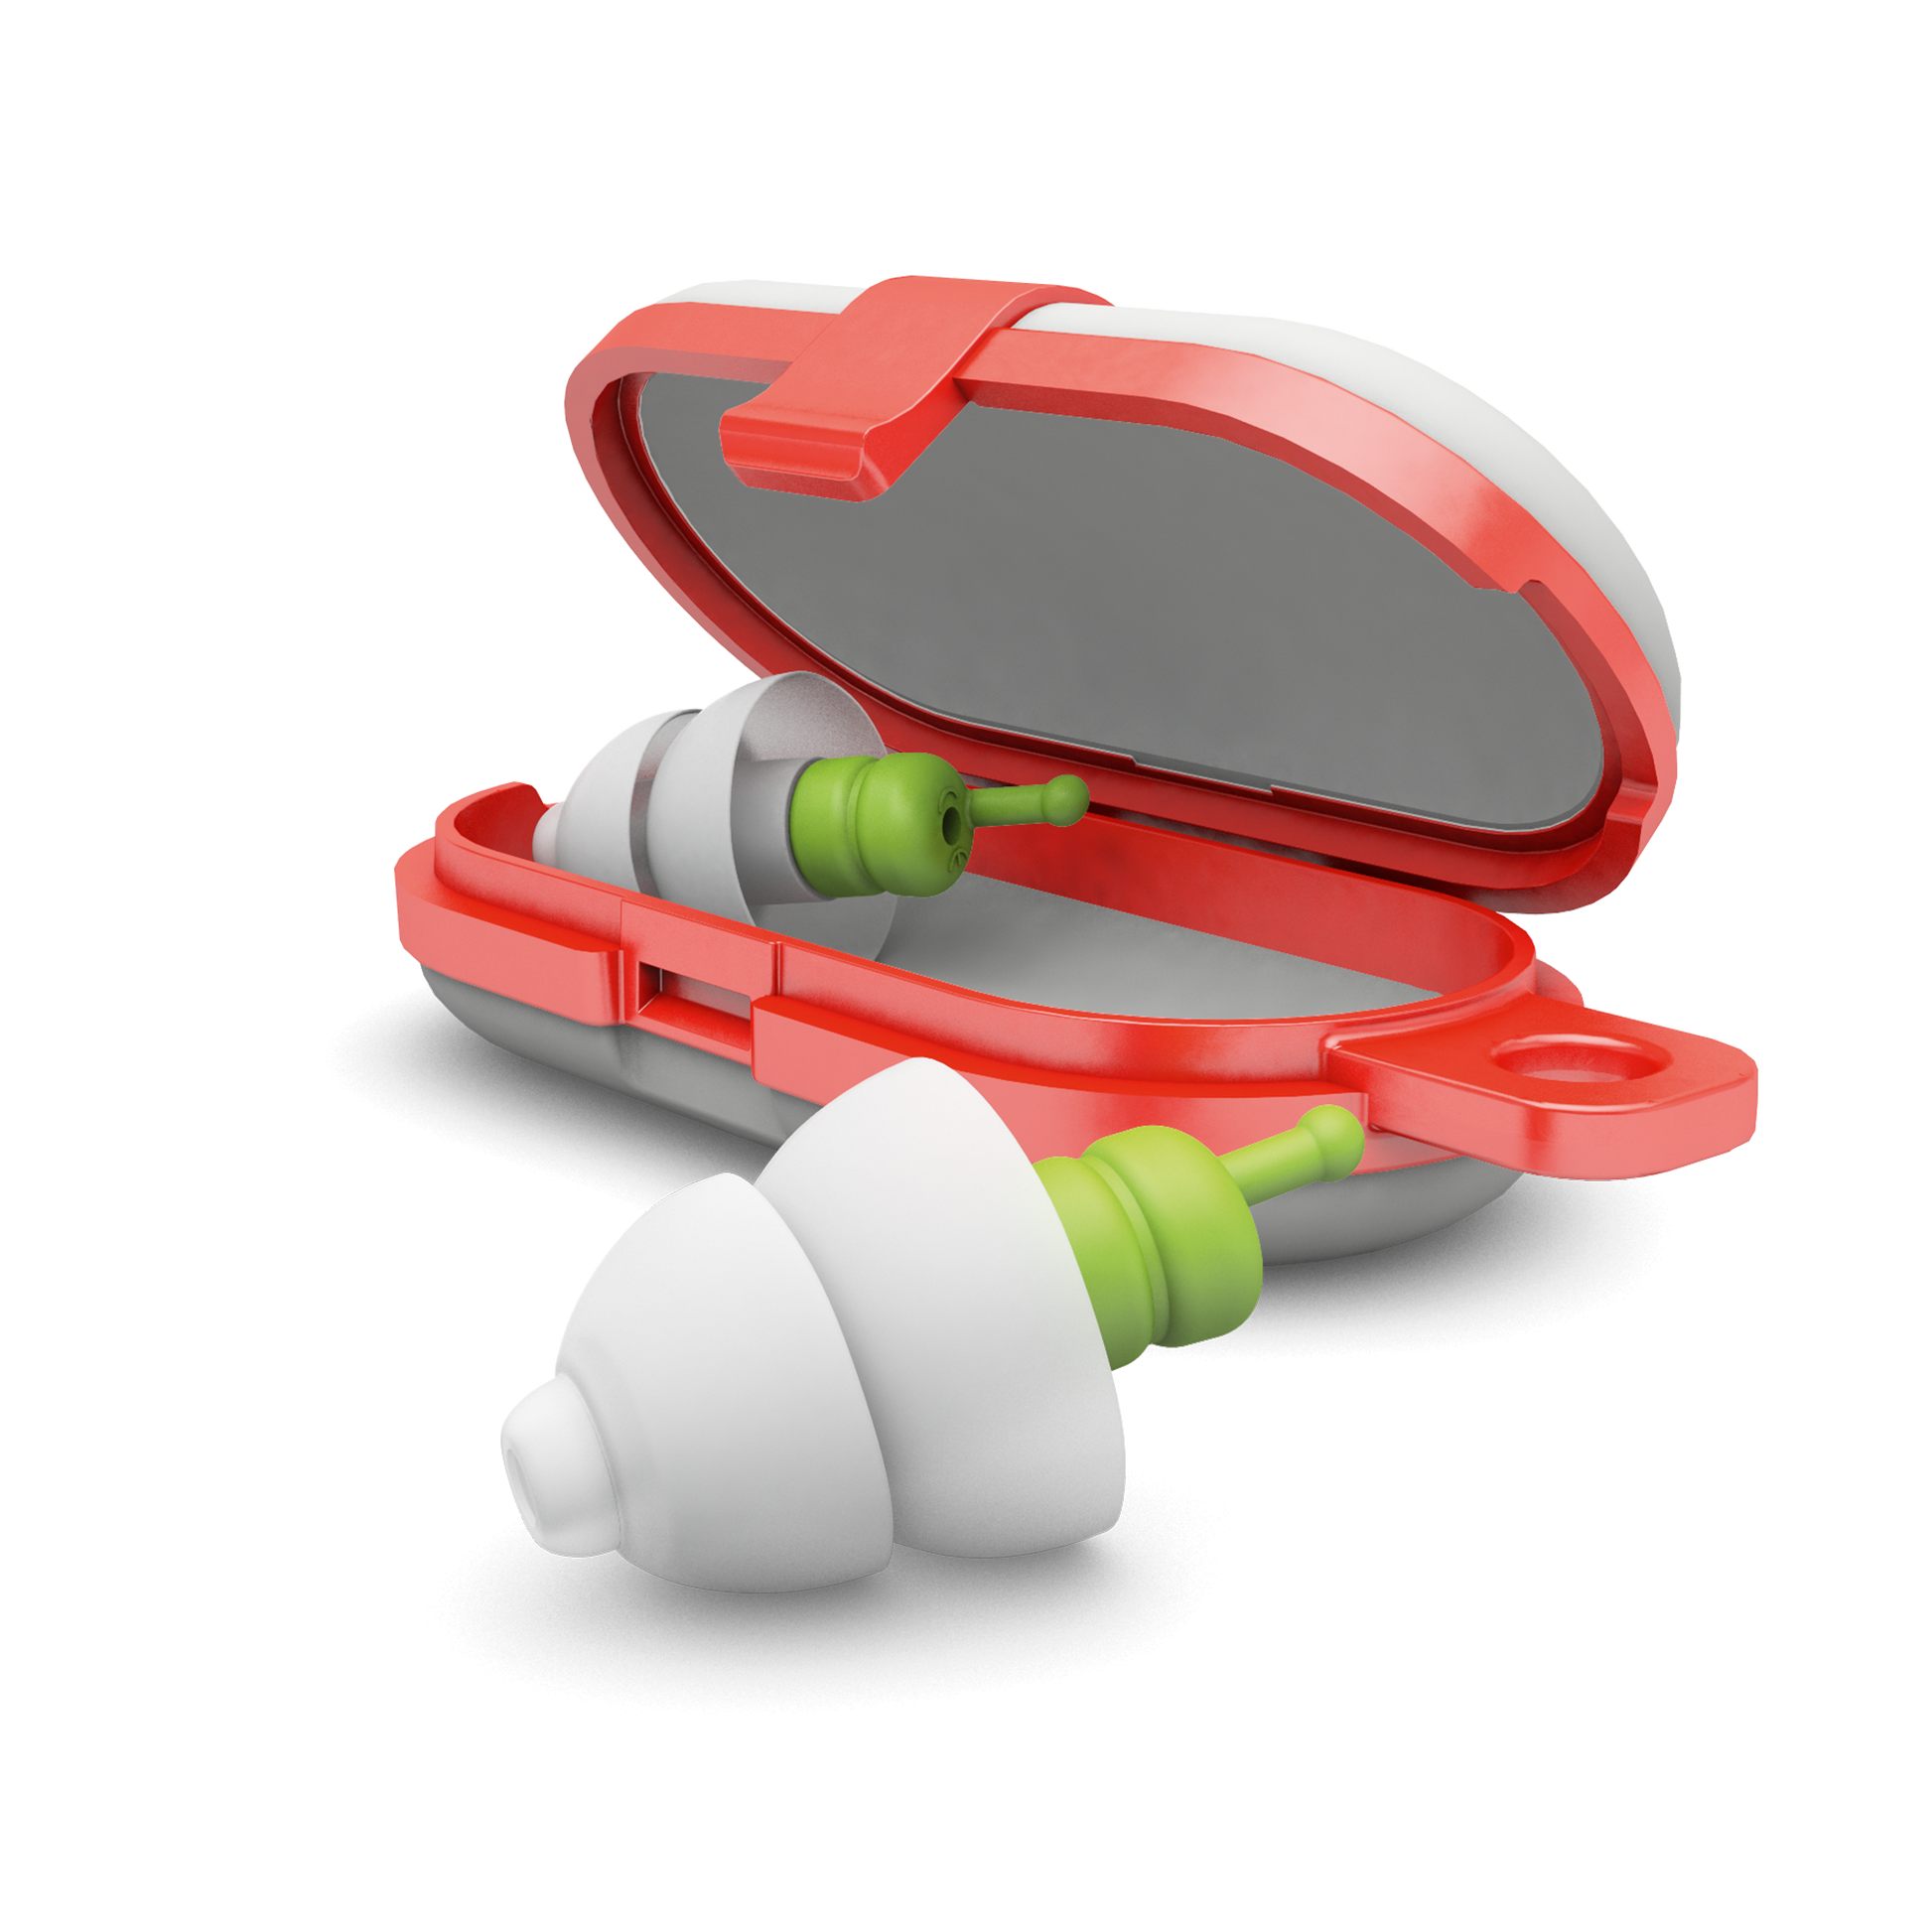 SleepSoft Alpine Protection Auditive Bouchons d’oreilles Casque anti-bruit red dot award protéger votre oreille Sommeil